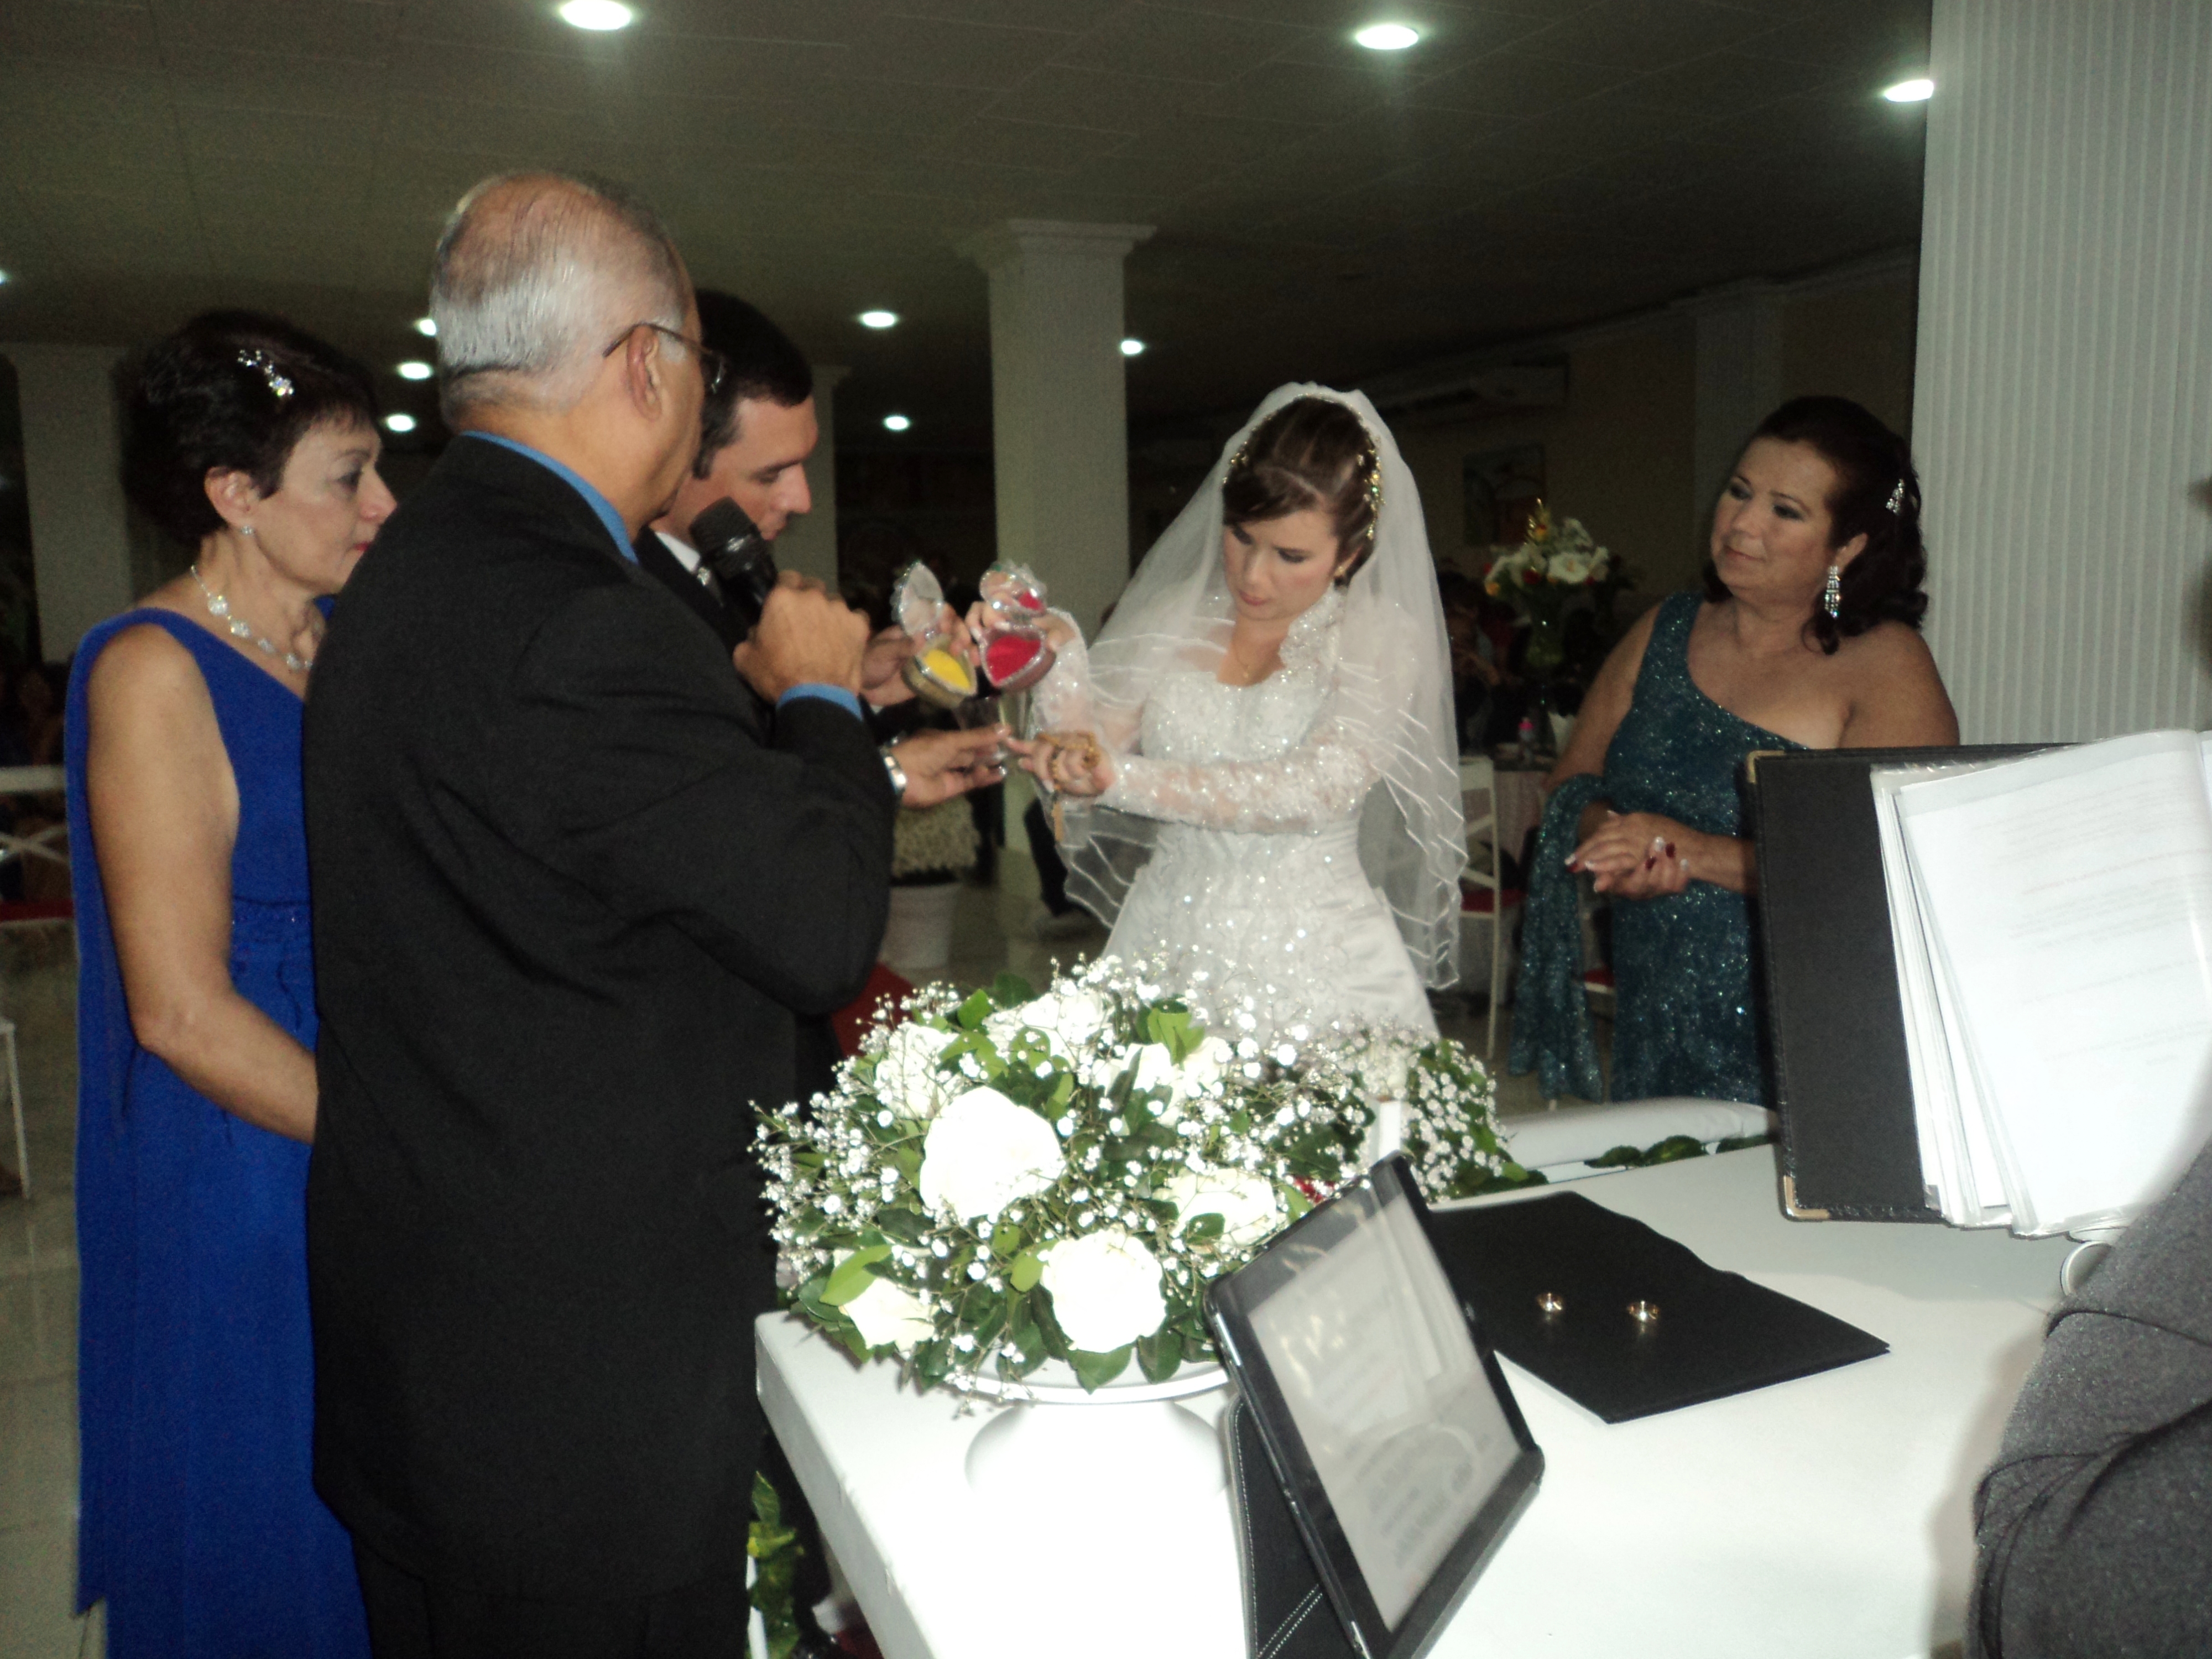 foto boa ritual com areias Túlio com noivos Manoel felipe e Juliana, 27.7.14, Sitio Quebra Dente